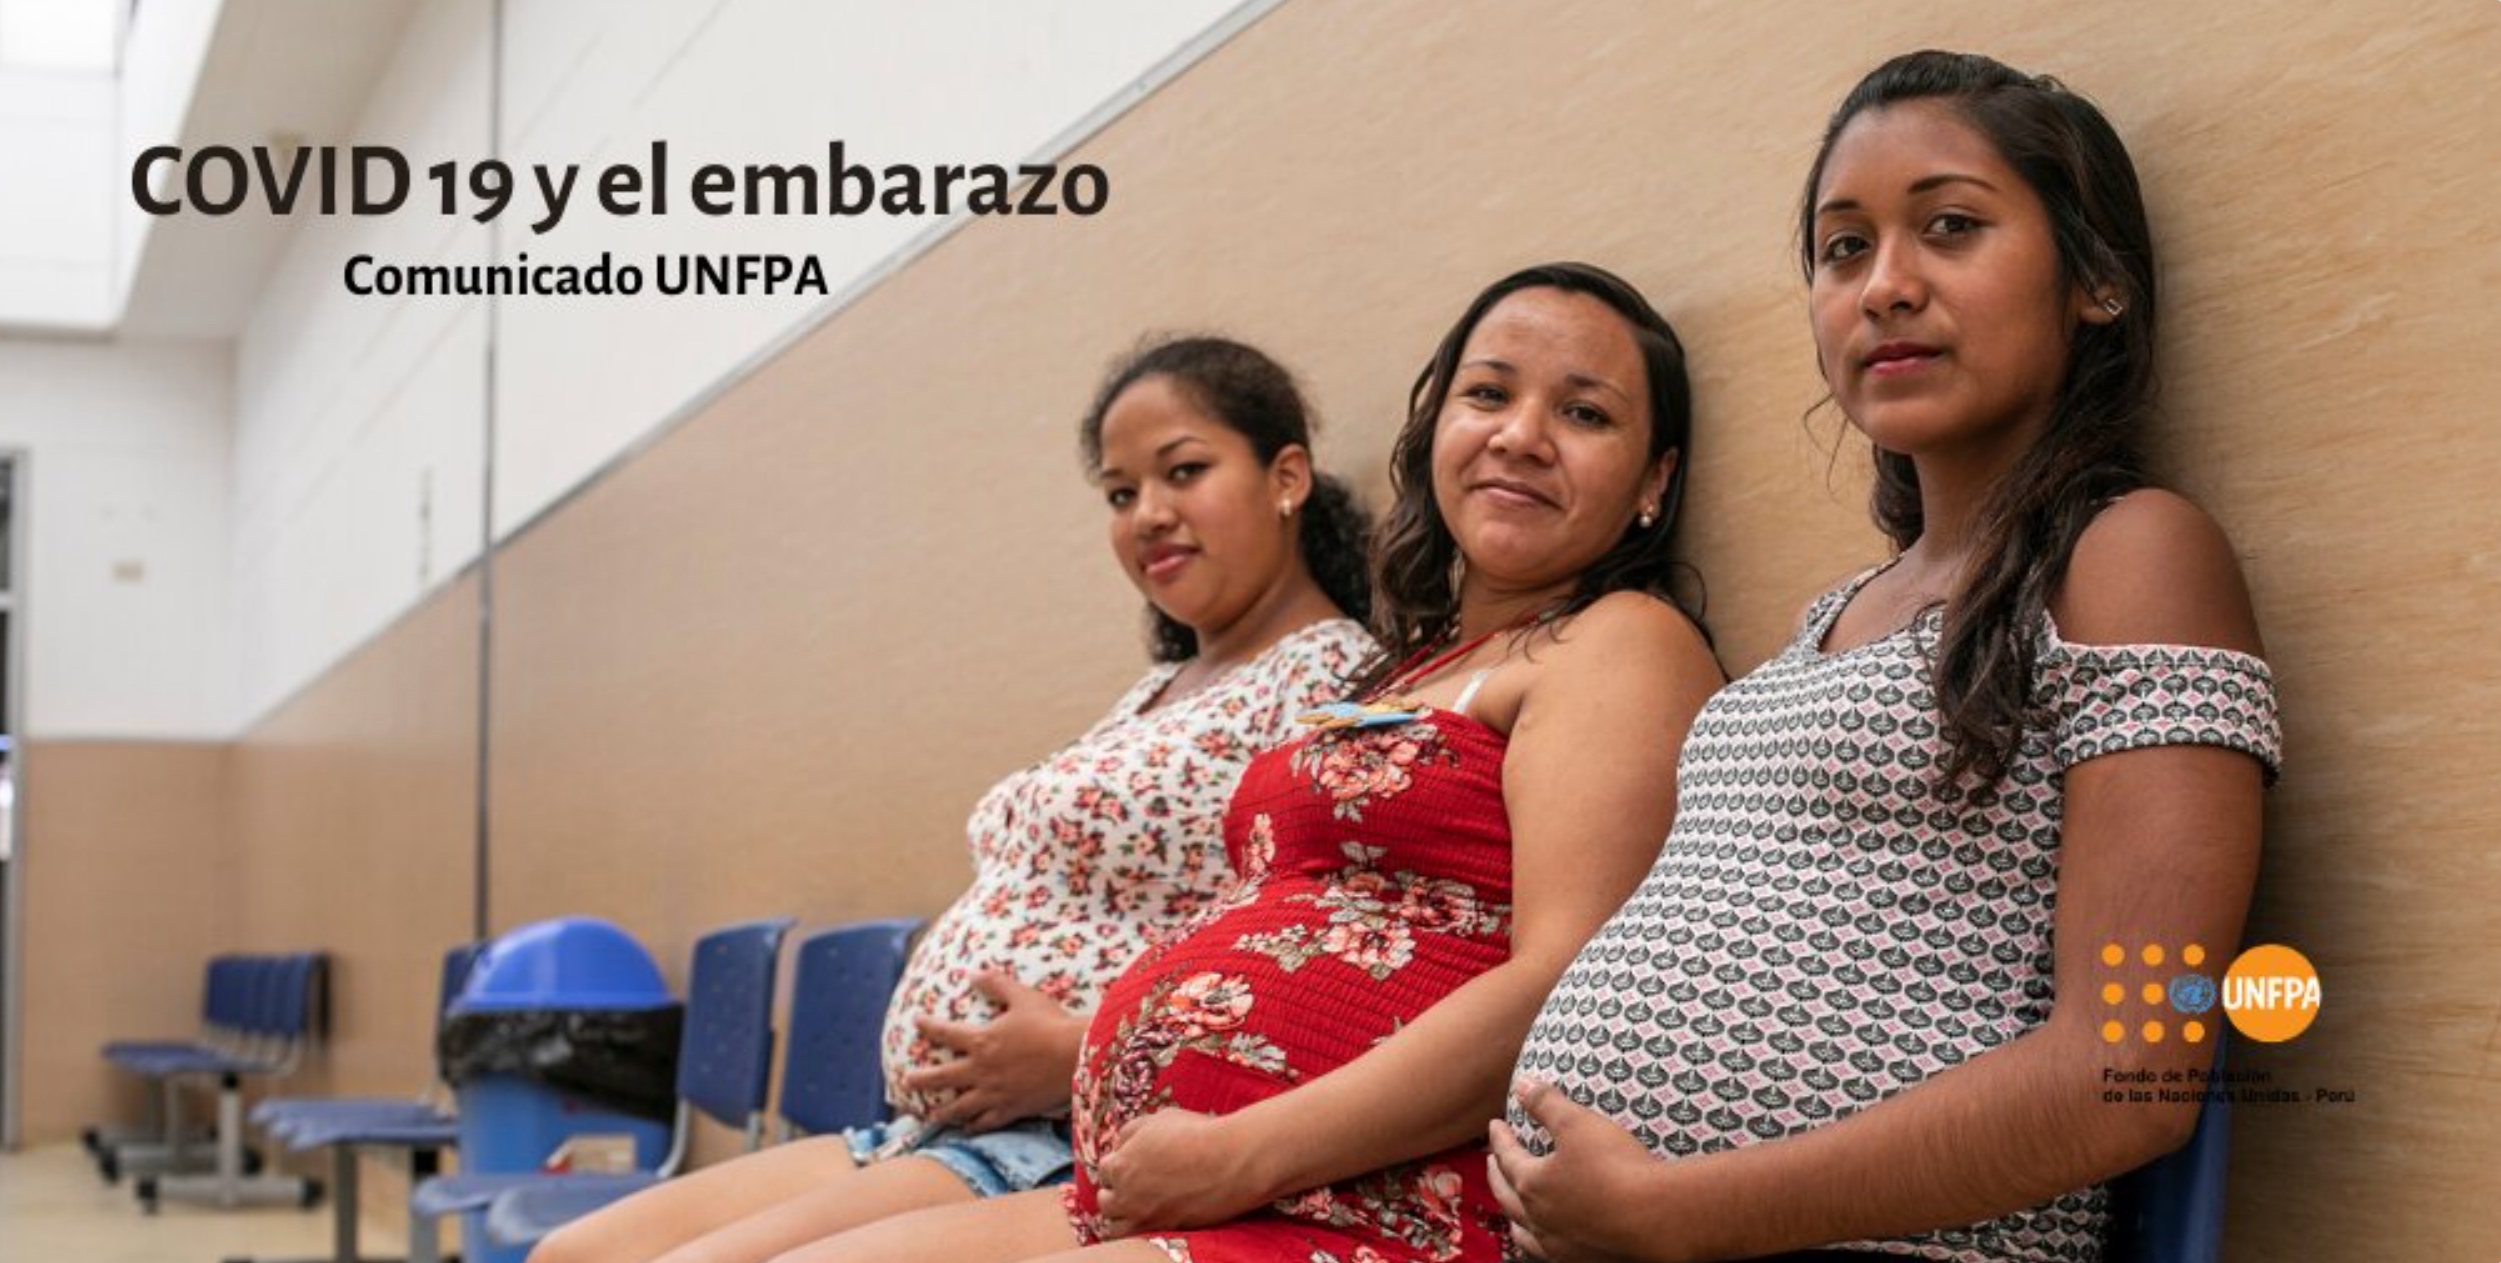 Comunicado del UNFPA sobre el nuevo coronavirus (#COVIDー19) y el embarazo.